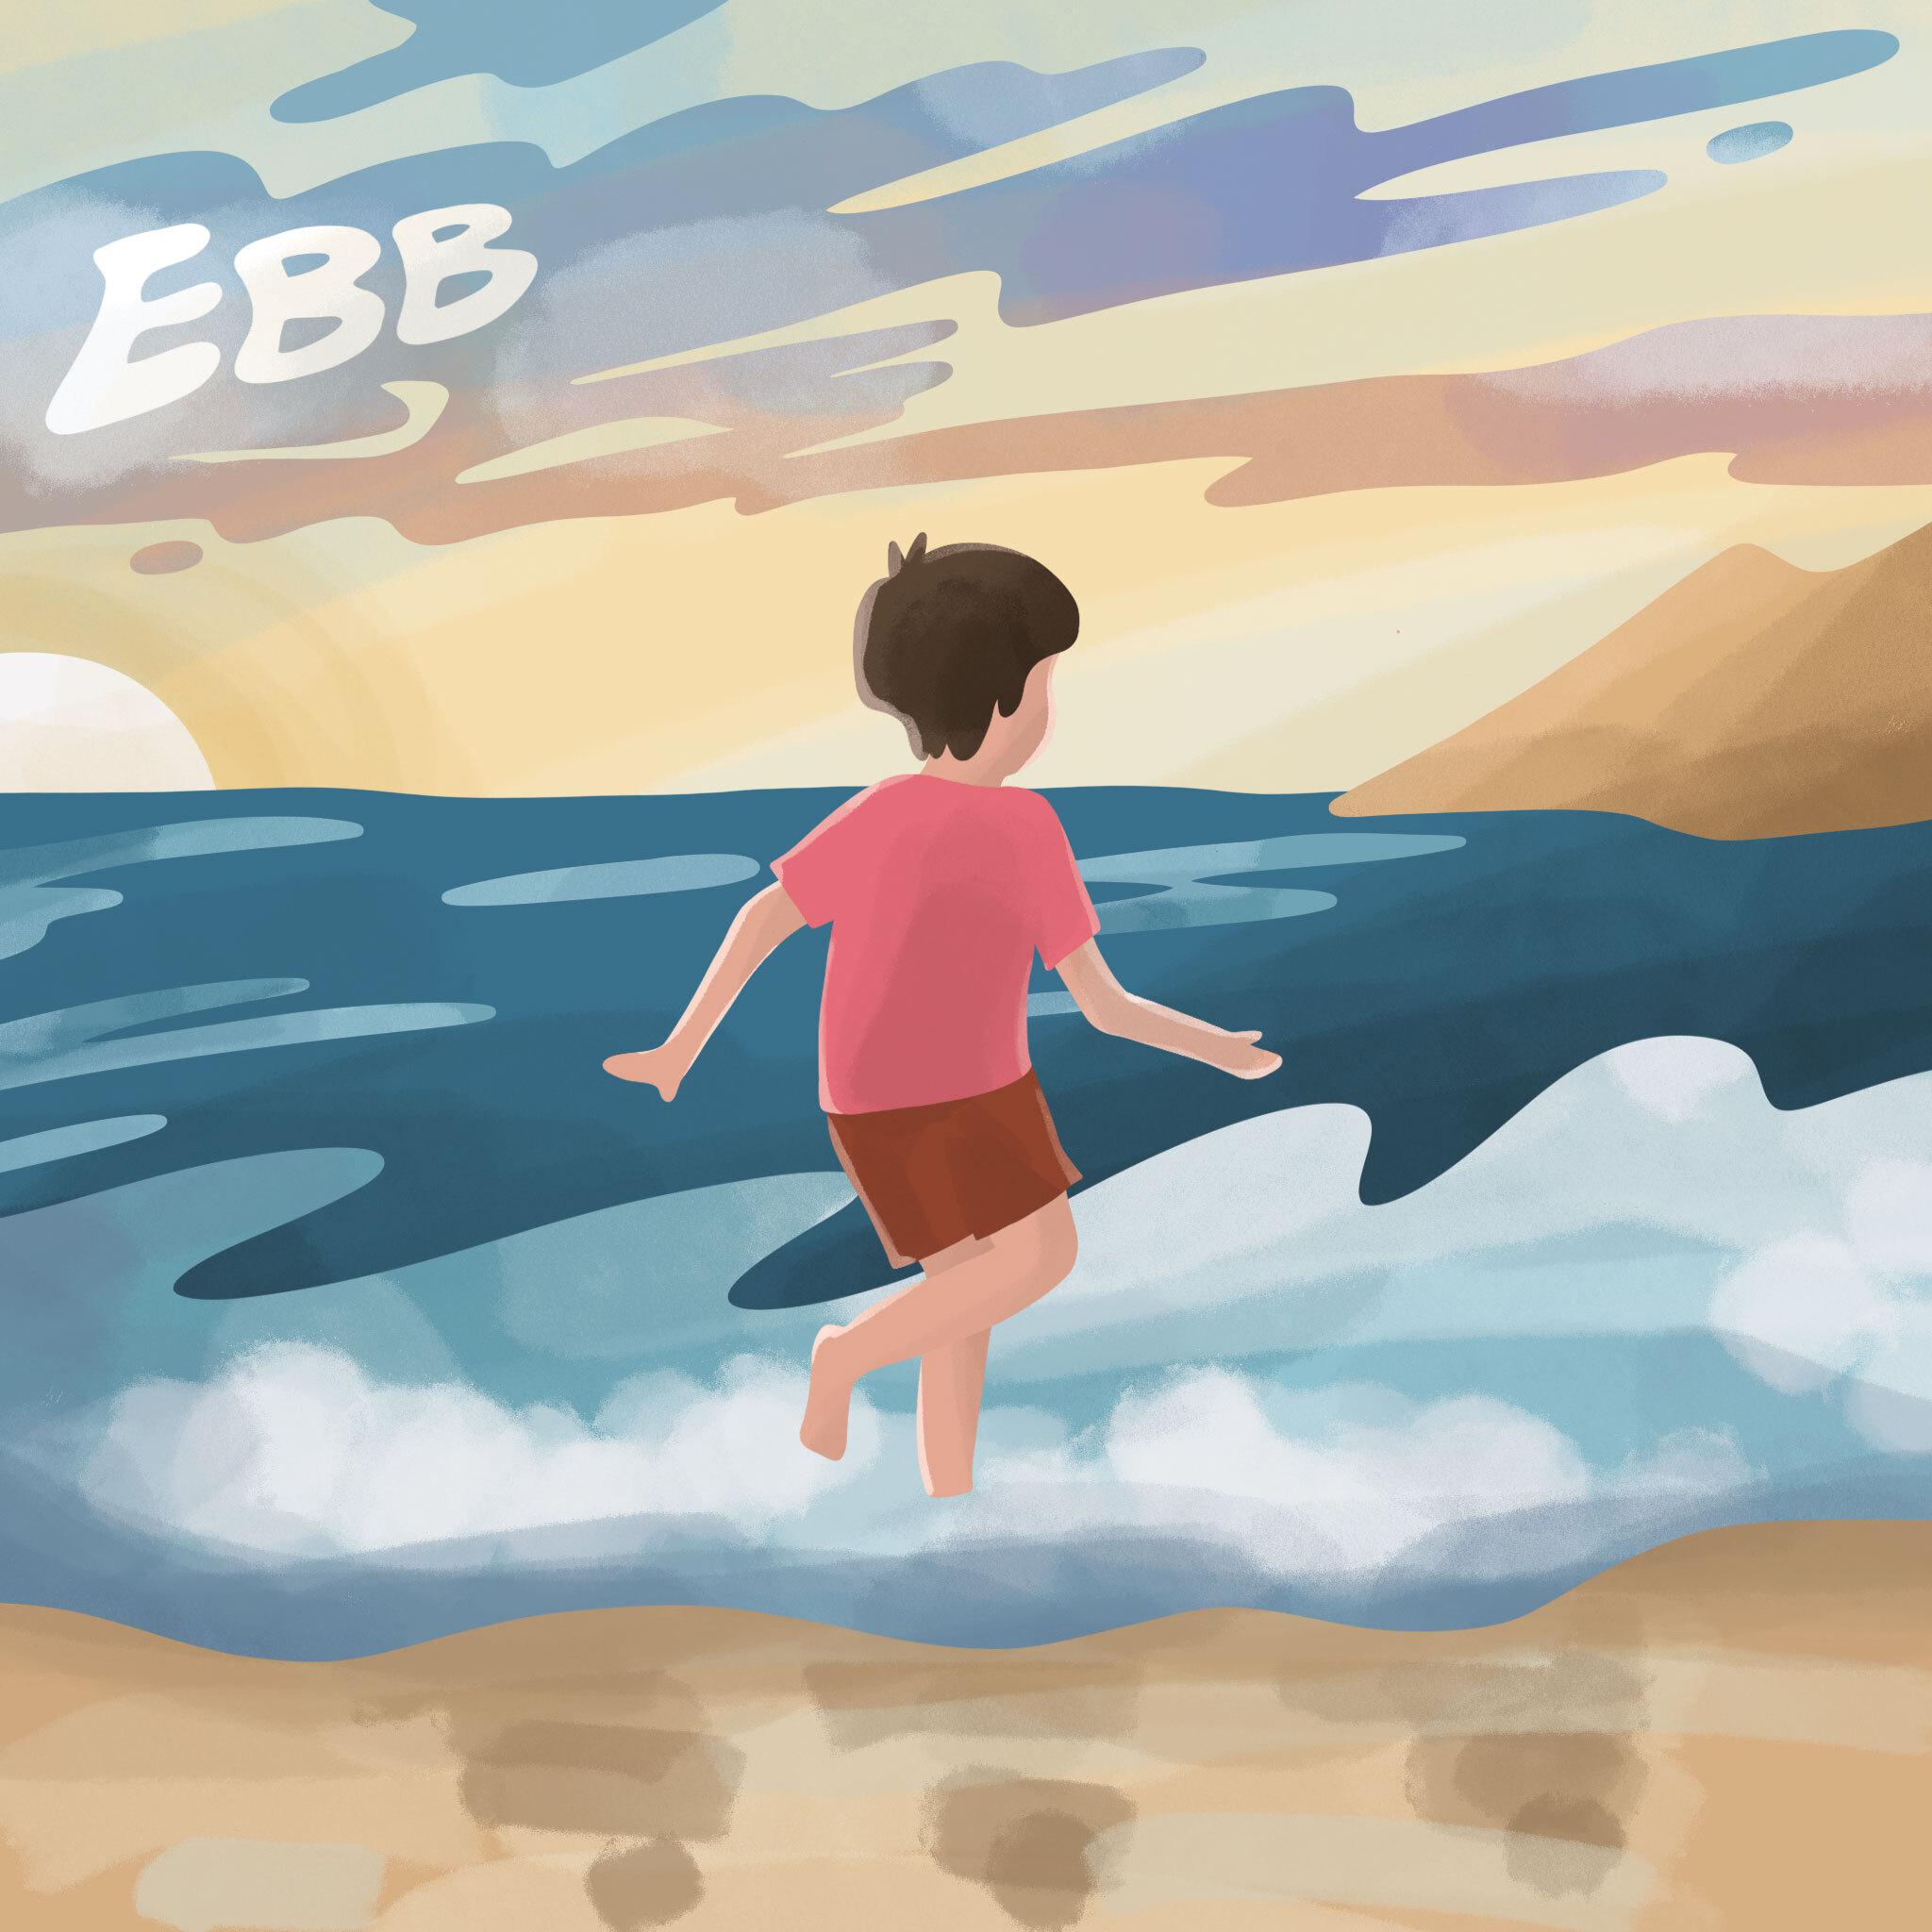 EBB - Plage des Lecques (Ocean)